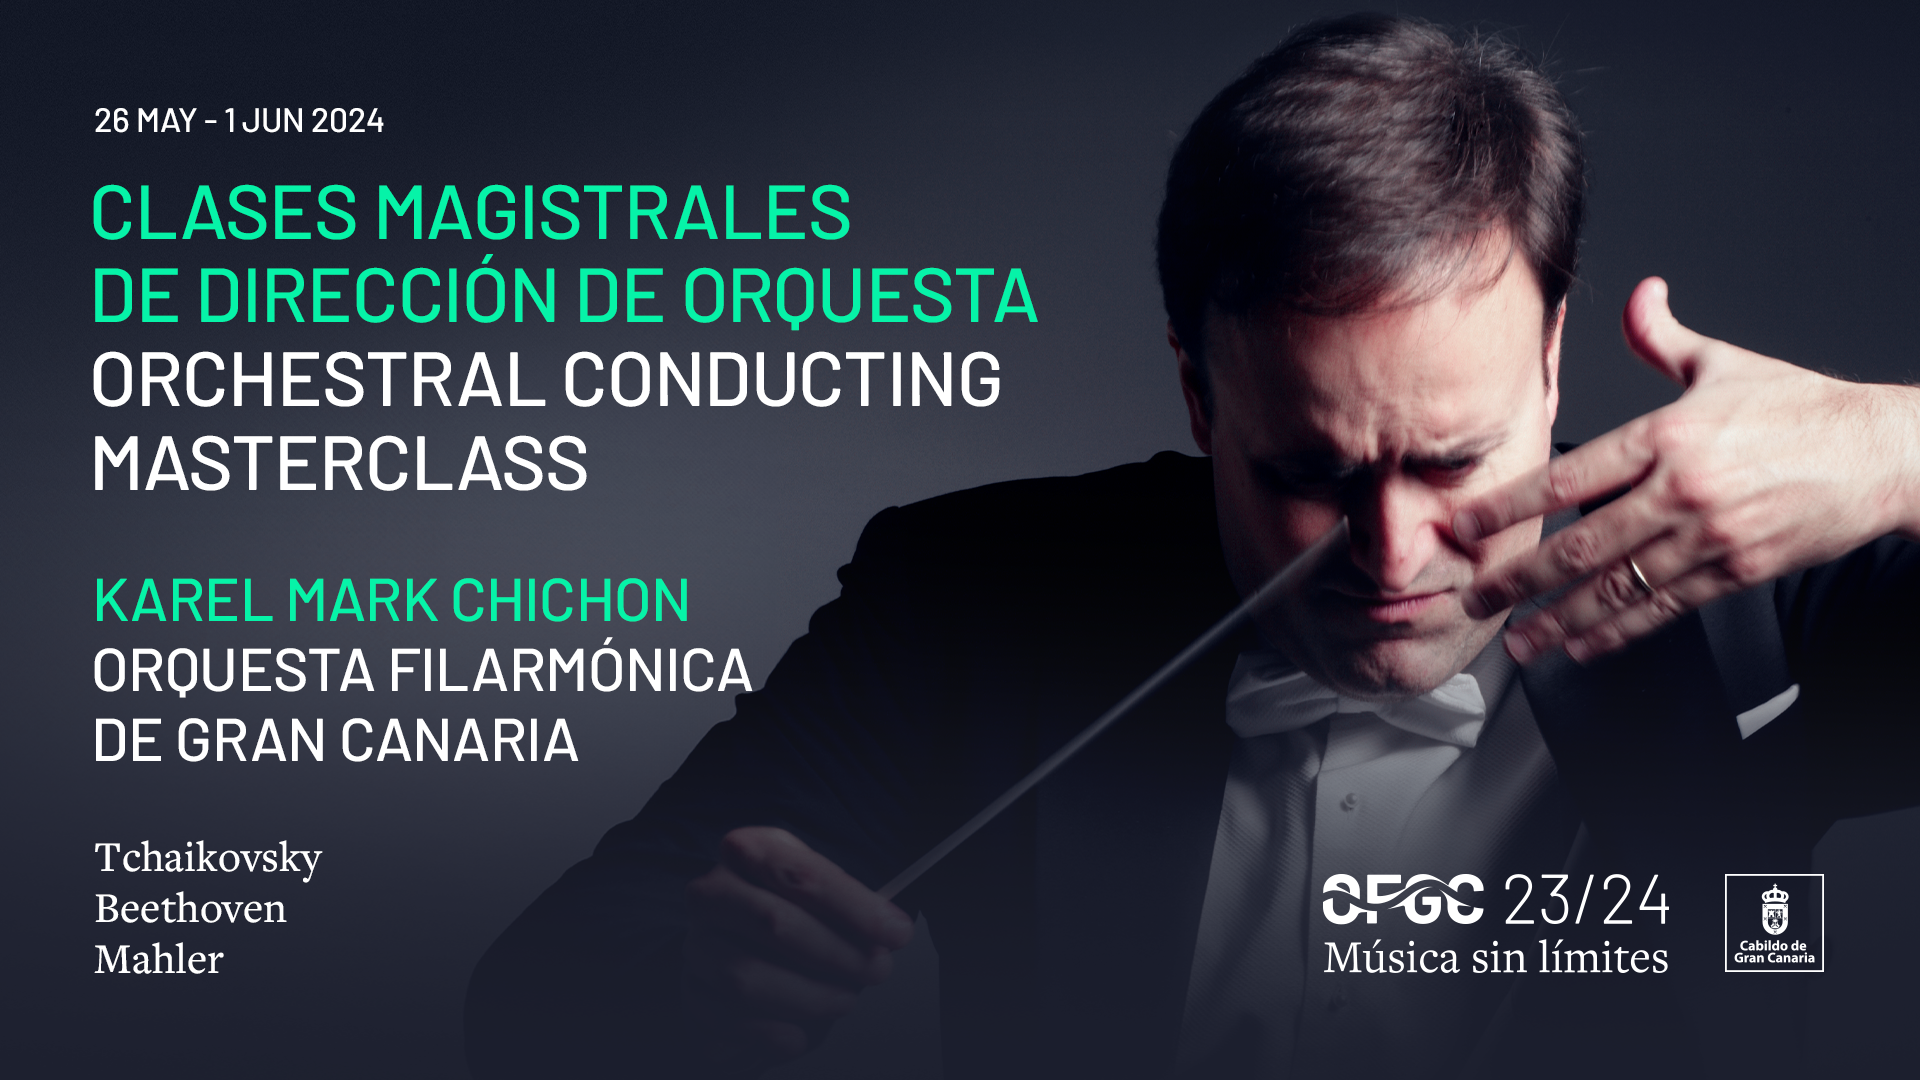 Clases magistrales de Karel Mark Chichon con la Orquesta Filarmónica de Gran Canaria